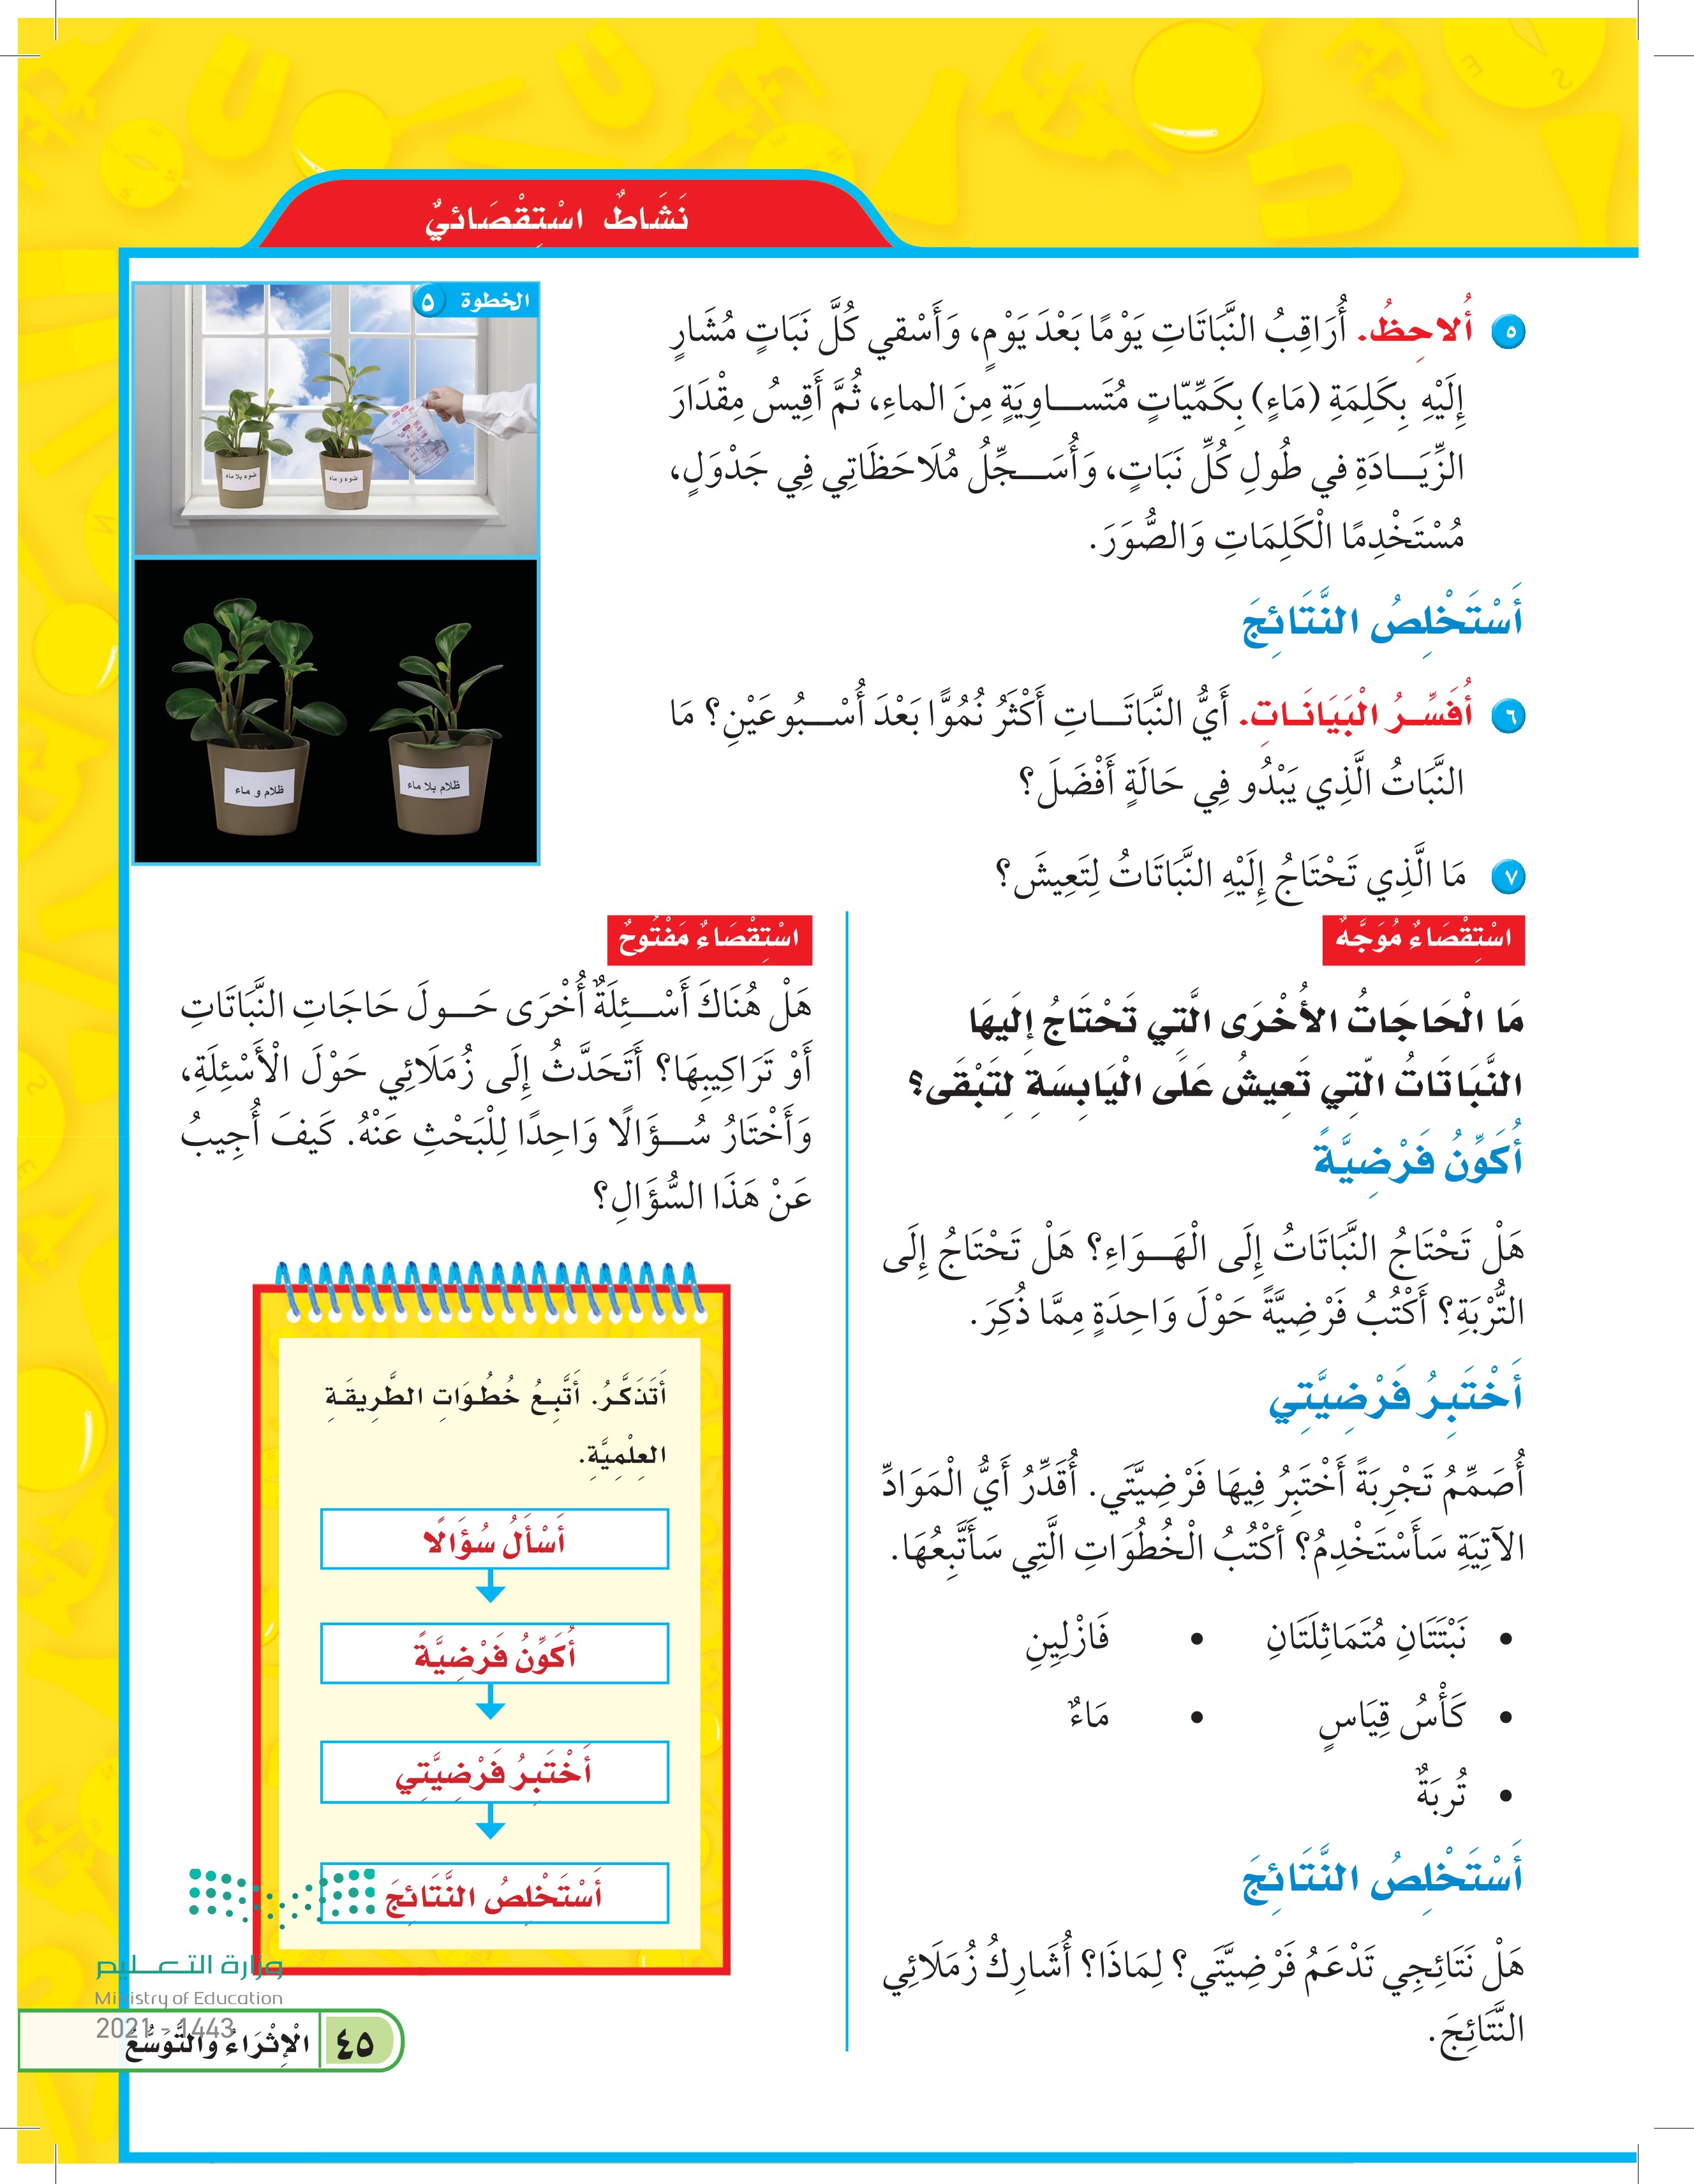 الدرس الثاني: النباتات وأجزاؤها